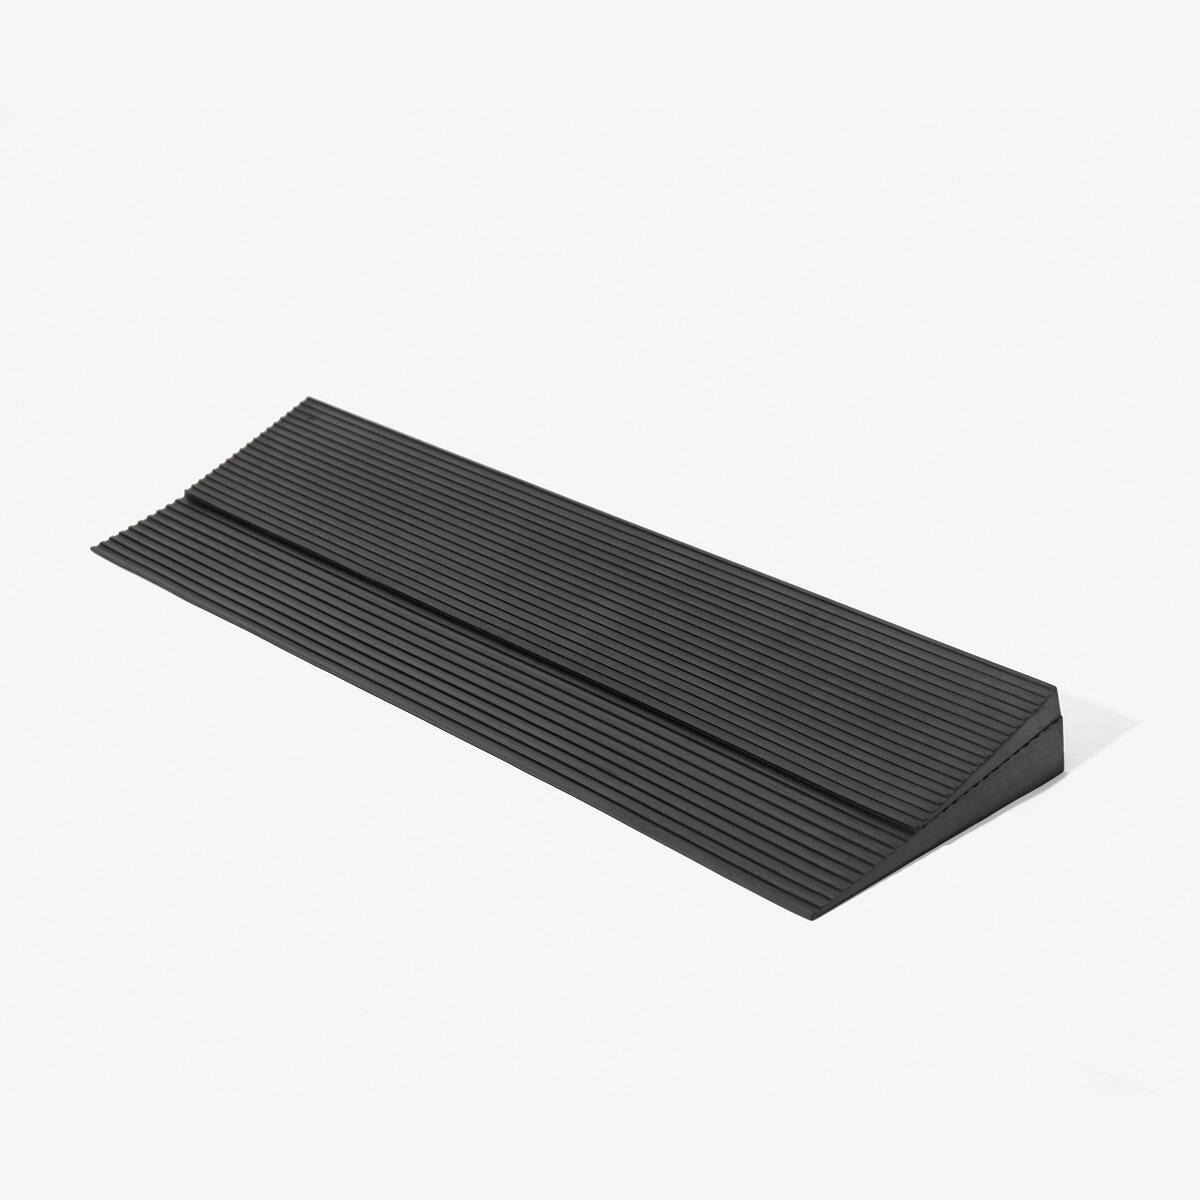 斜坡板 橡膠材質 可自行裁切 添大 TTR-90 A款補助